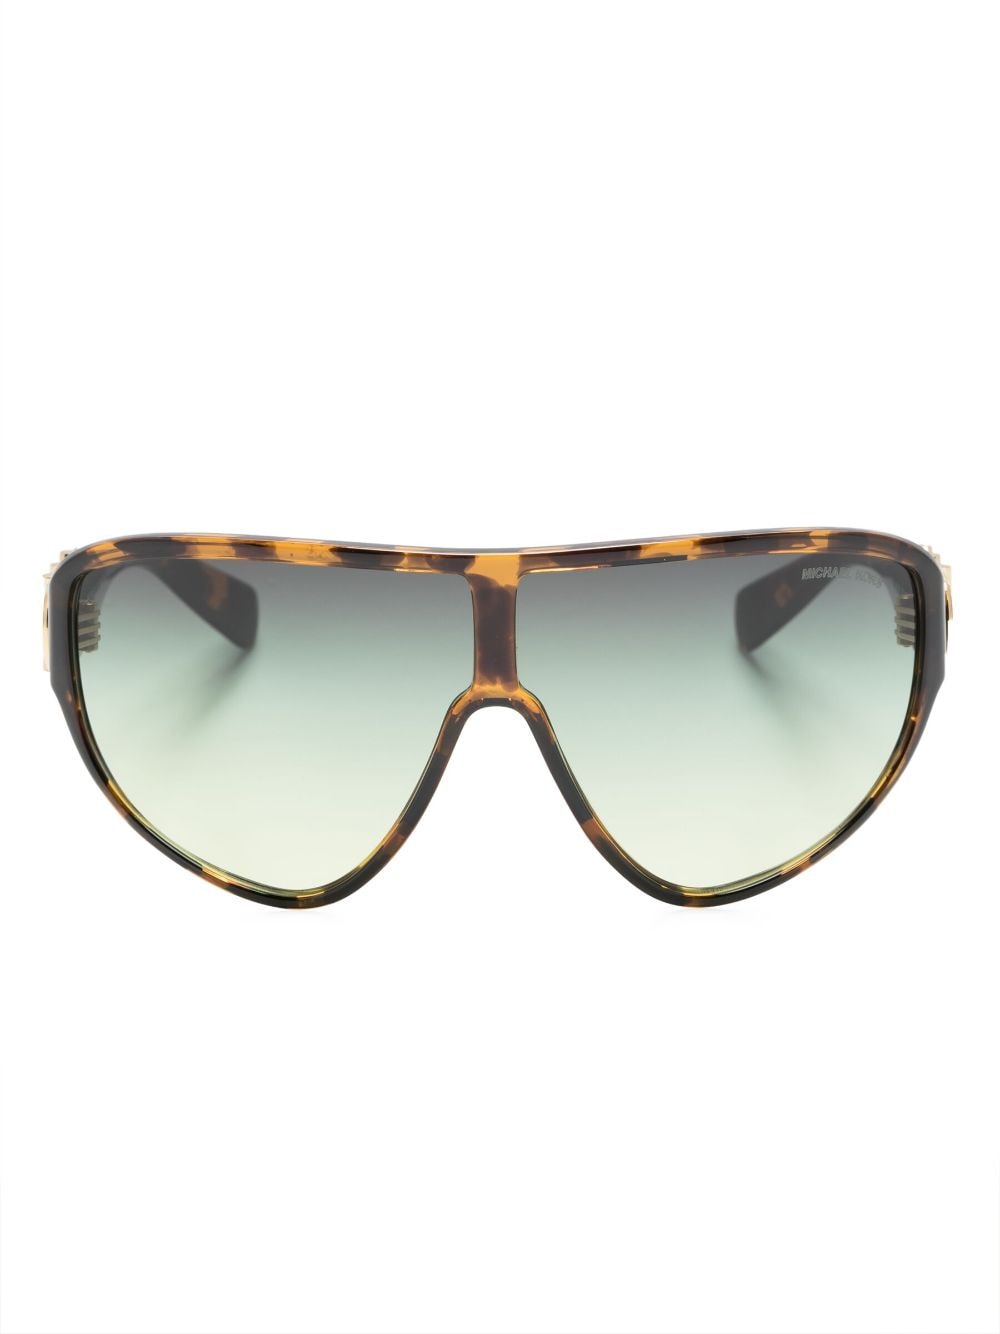 Michael Kors Tortoiseshell-effect Mask-frame Sunglasses In Brown